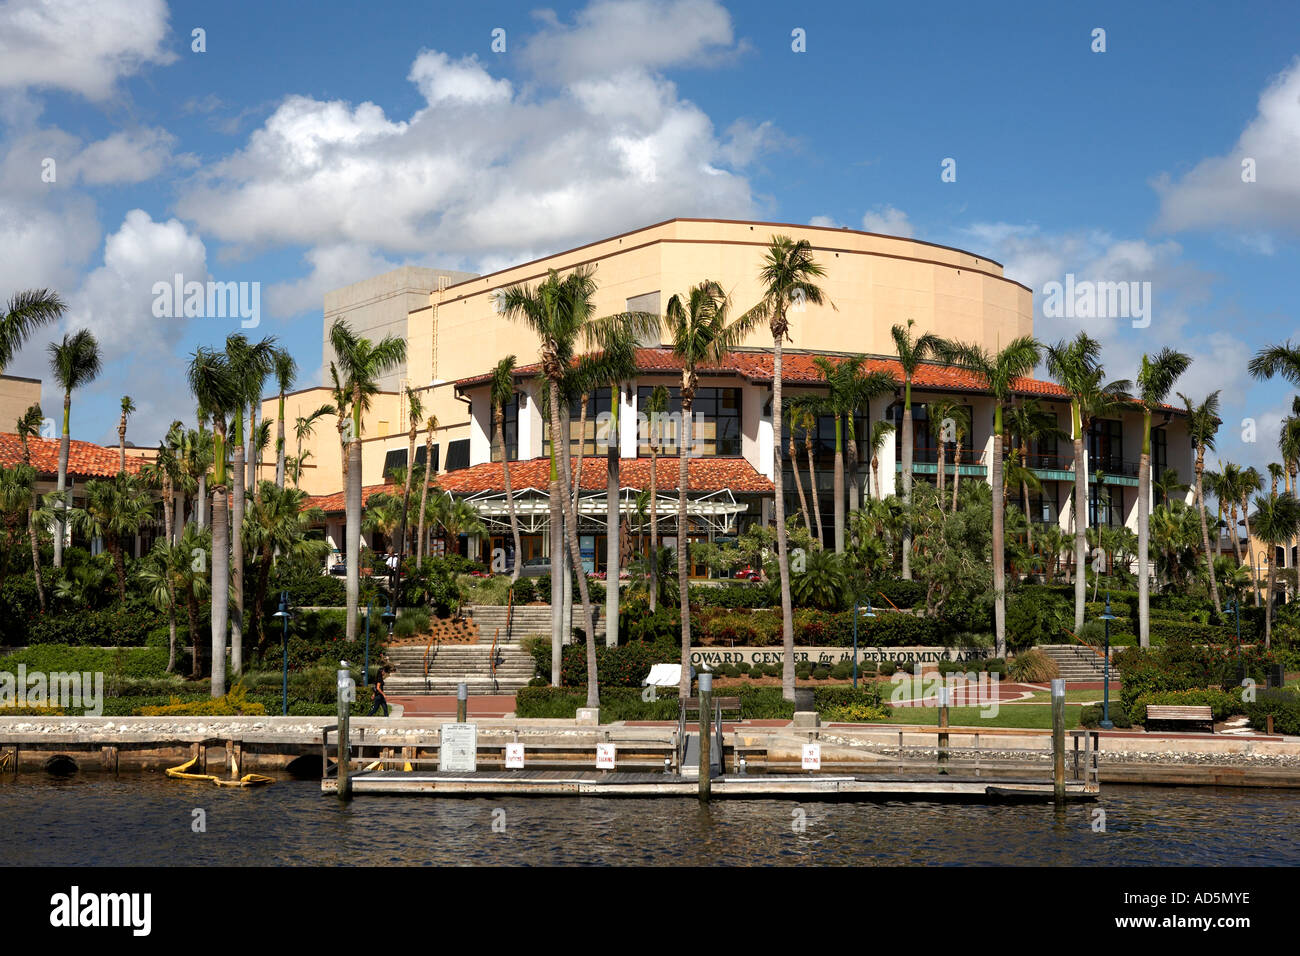 Howard-Center für darstellende Künste Gebäude Fort Lauderdale Florida Vereinigte Staaten usa Stockfoto